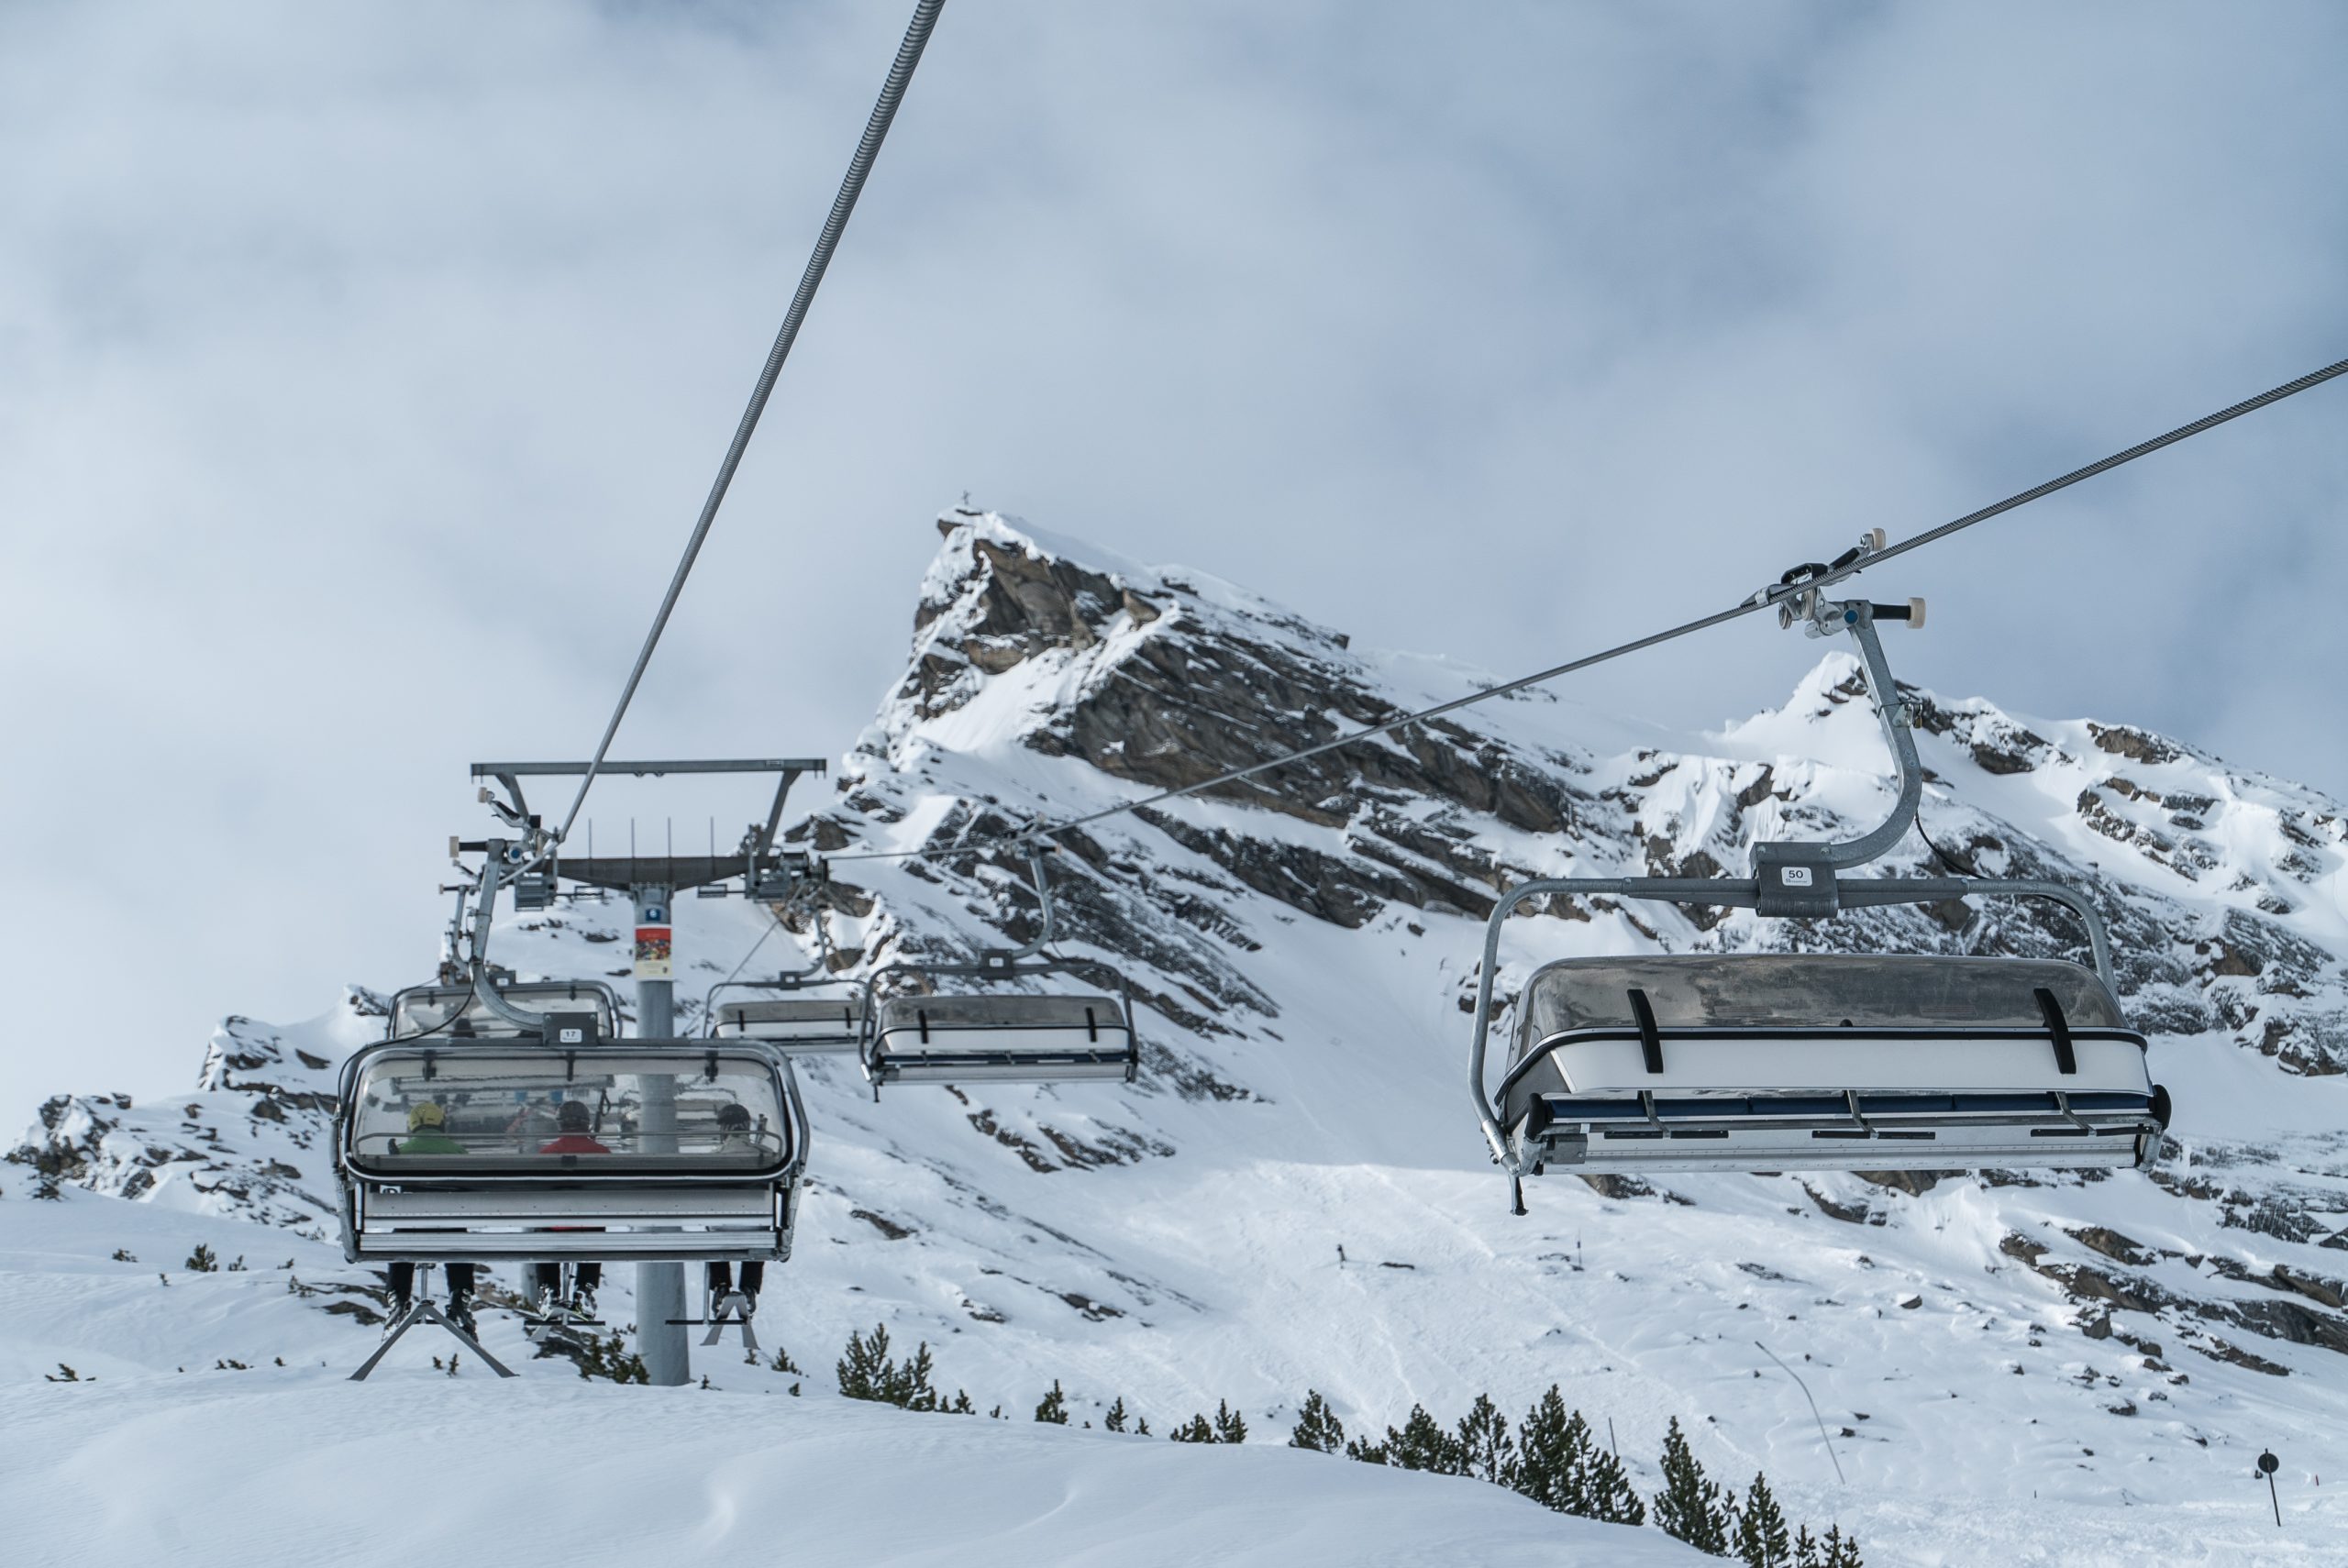 Schneesicher Skifahren im Tiroler Luftkurort Galtür, Paznauntal, Tirol, Österreich